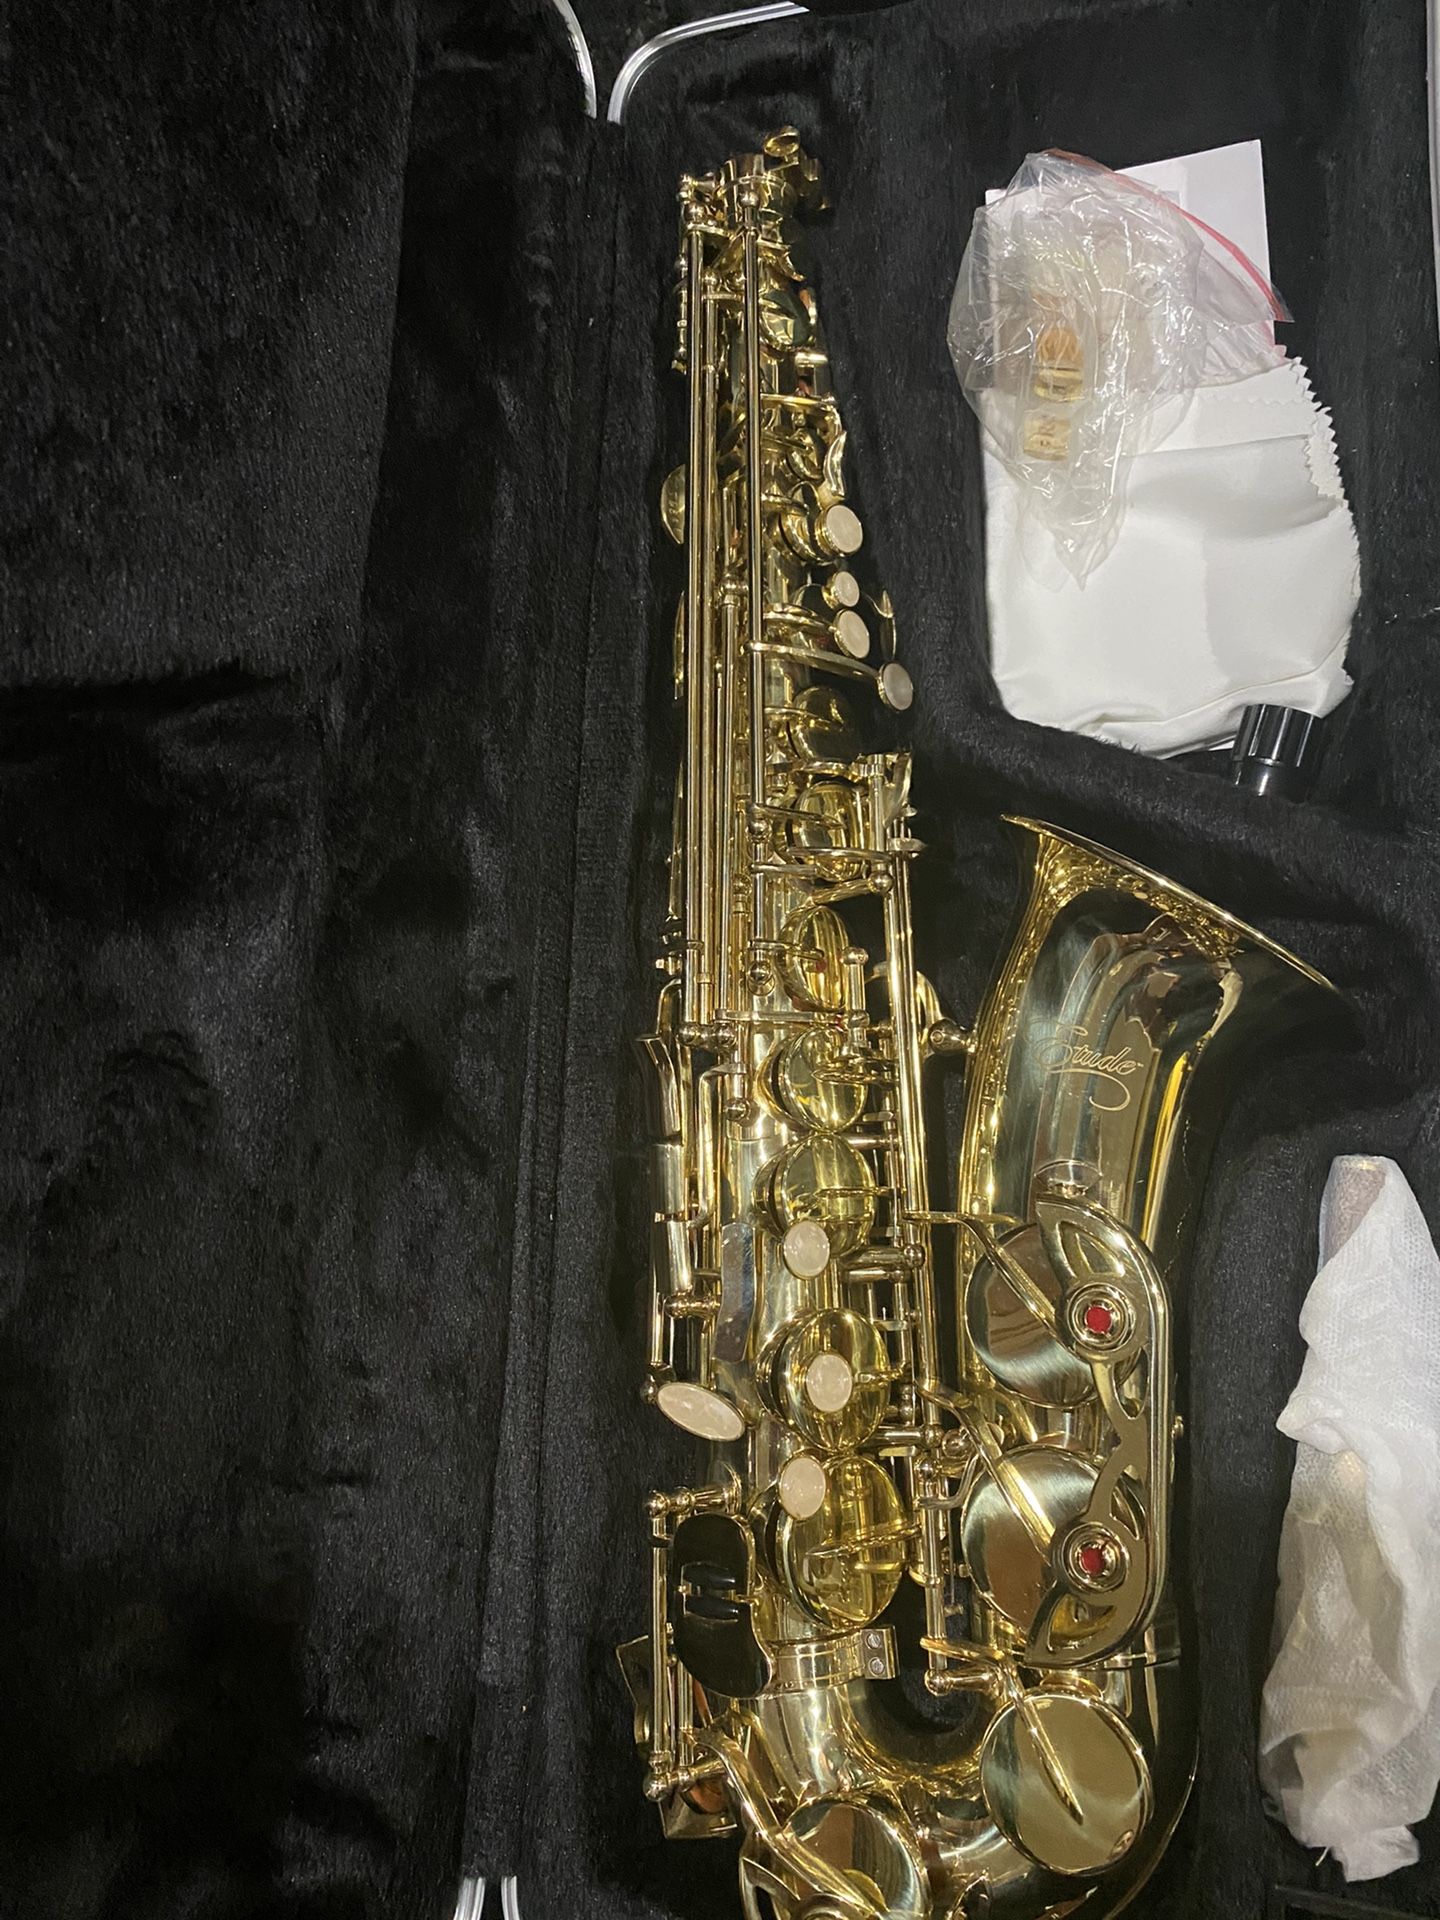 Slightly used saxophone